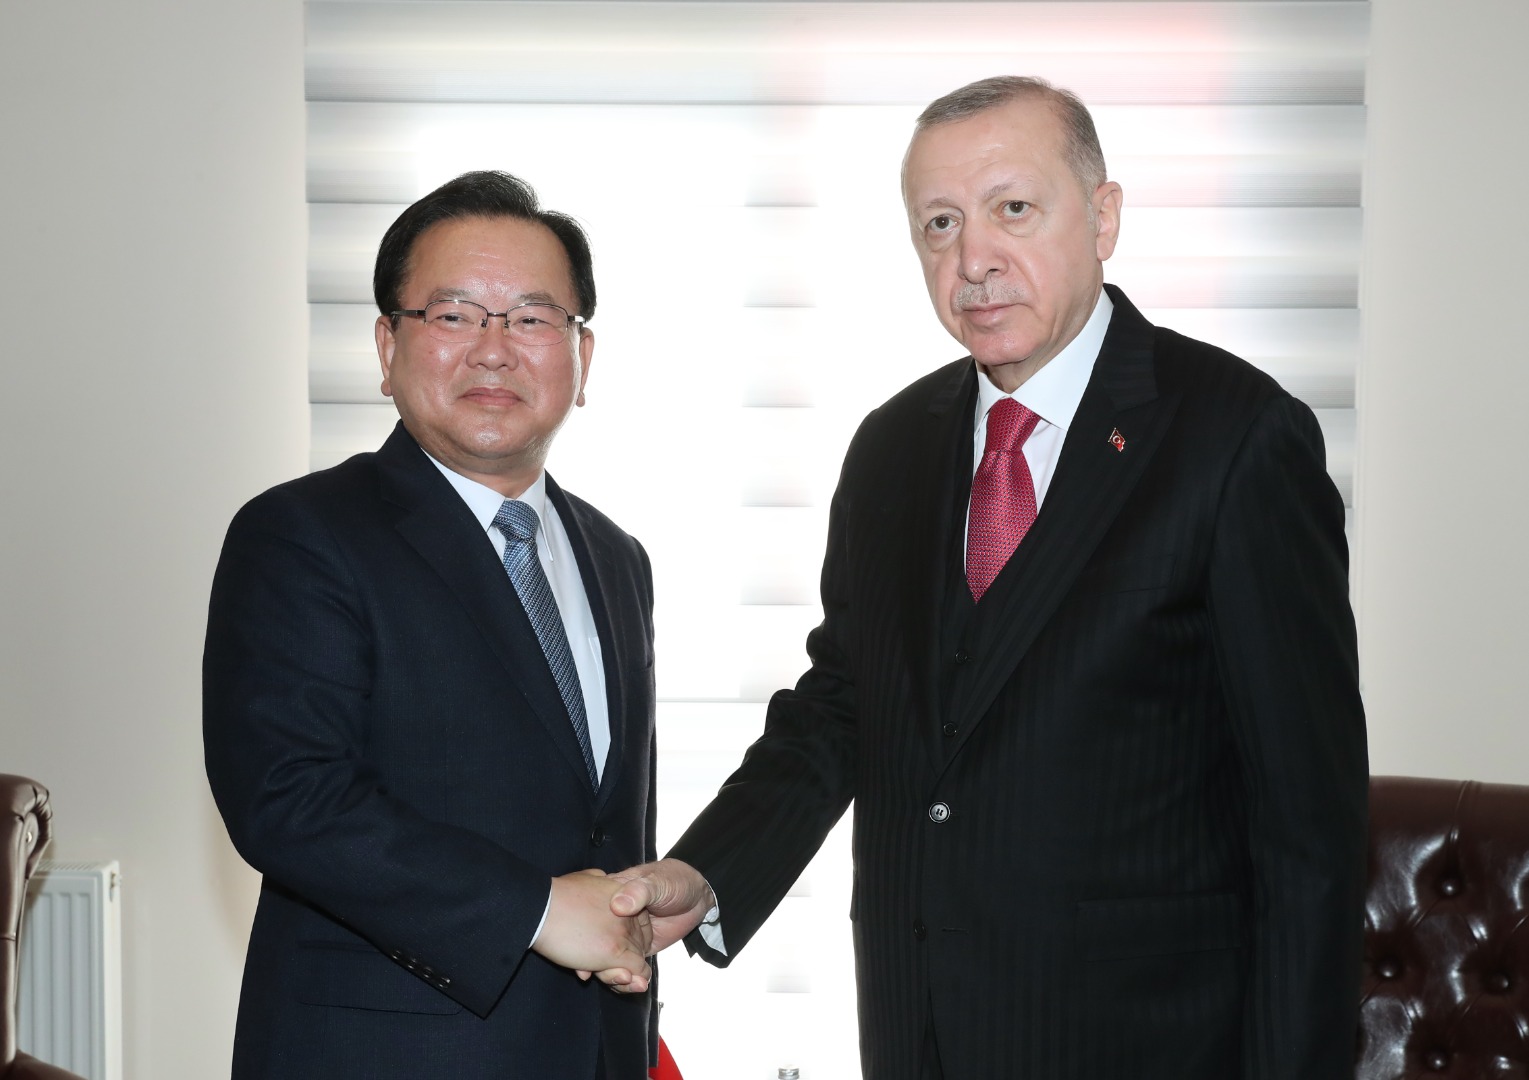 Cumhurbaşkanı Erdoğan Güney Kore Başbakanı ile görüştü